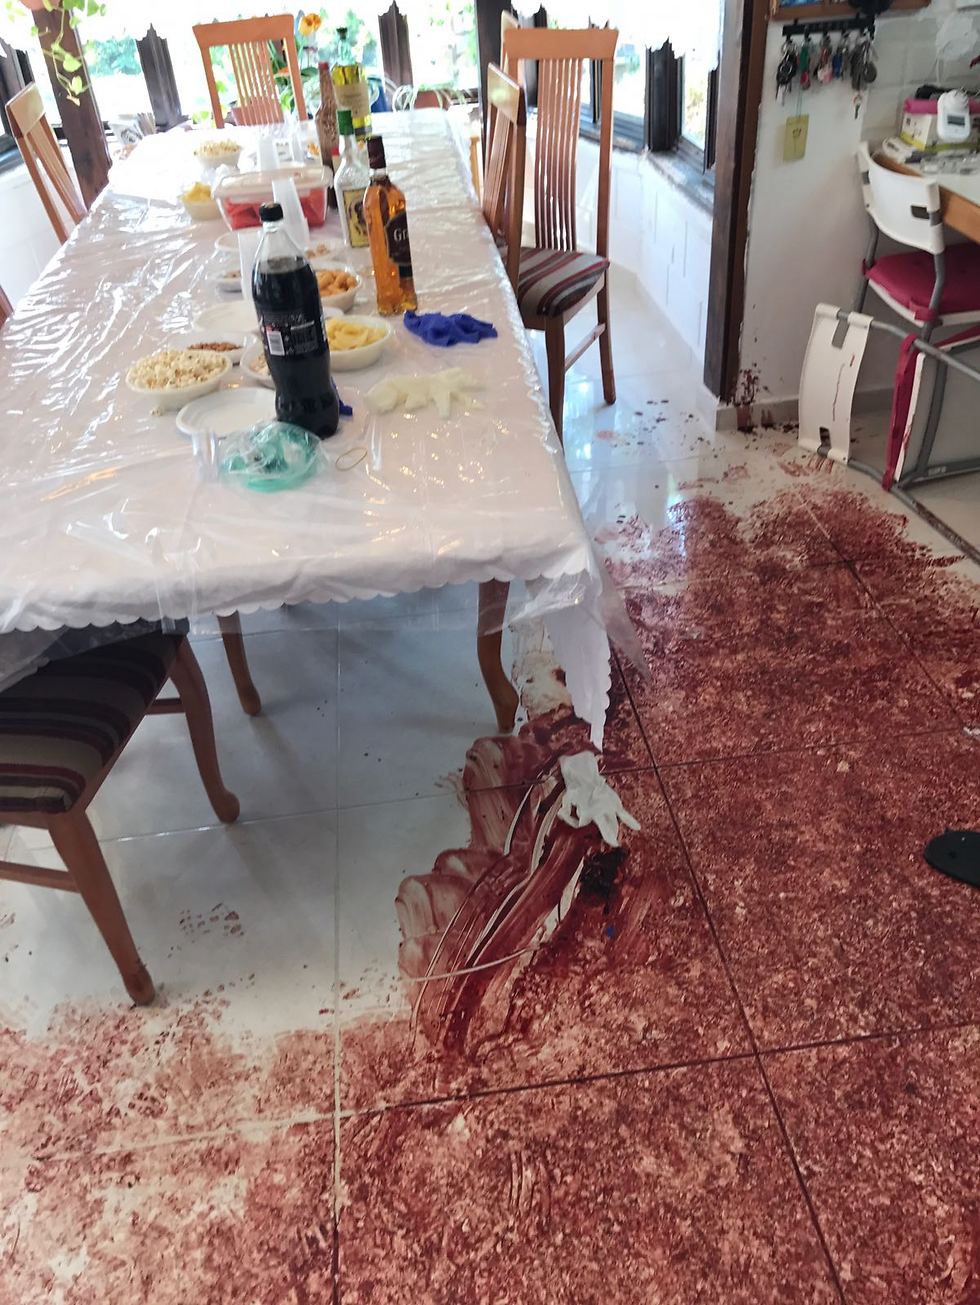 The scene of the attack (Photo: IDF Spokesman's Office)